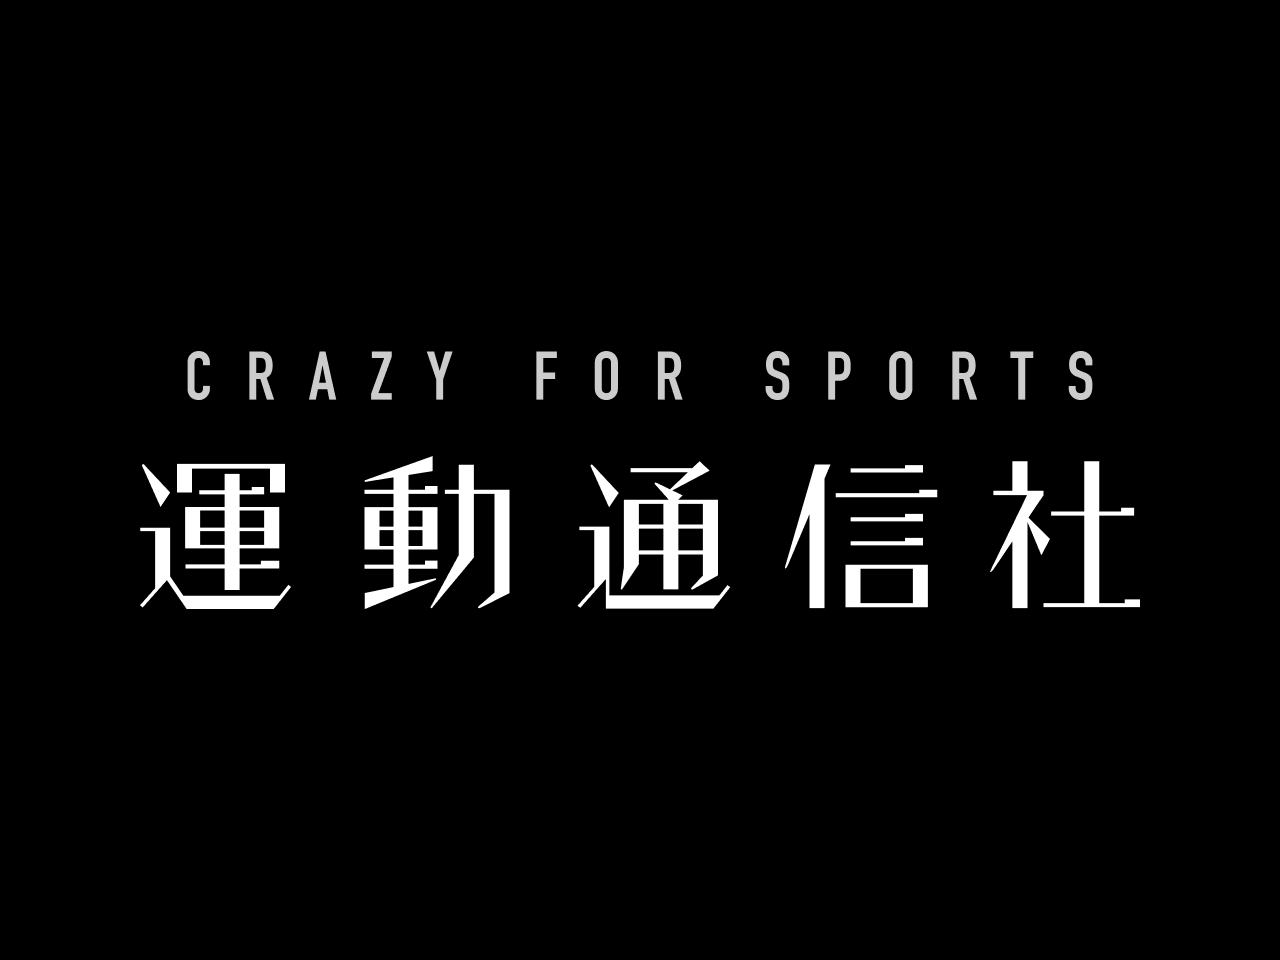 同社は『日本を世界が憧れるスポーツ大国にする』をビジョンに掲げるスポーツDXのベンチャー企業だ。